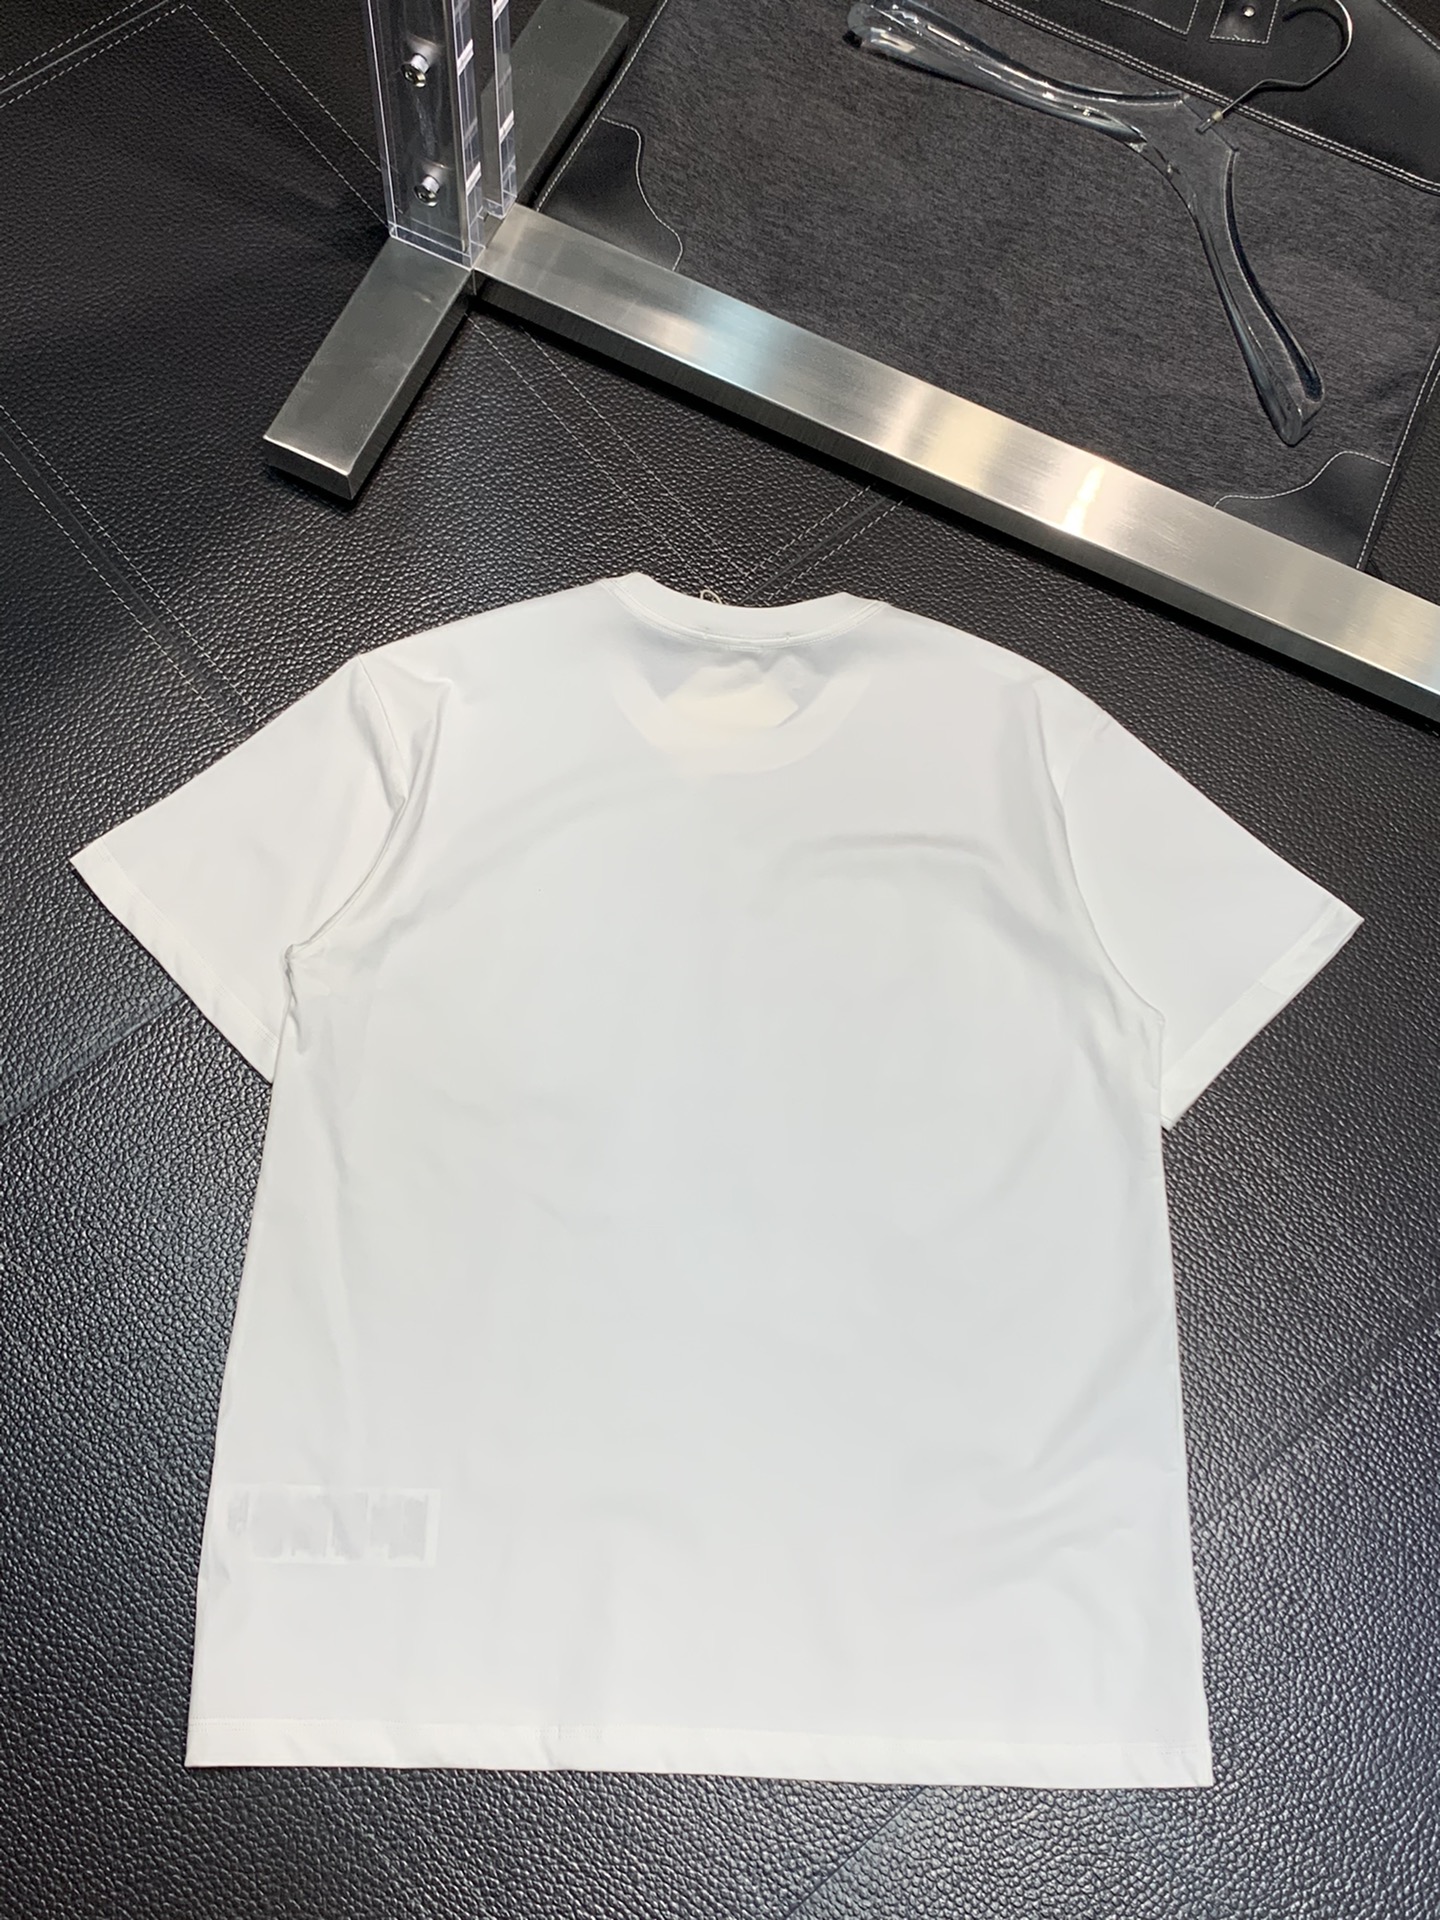 MCQ tシャツ アレキサンダーワン偽物 トップス 短袖 プリント 純綿 柔らかい ゆったり メンズ 2色可選_4